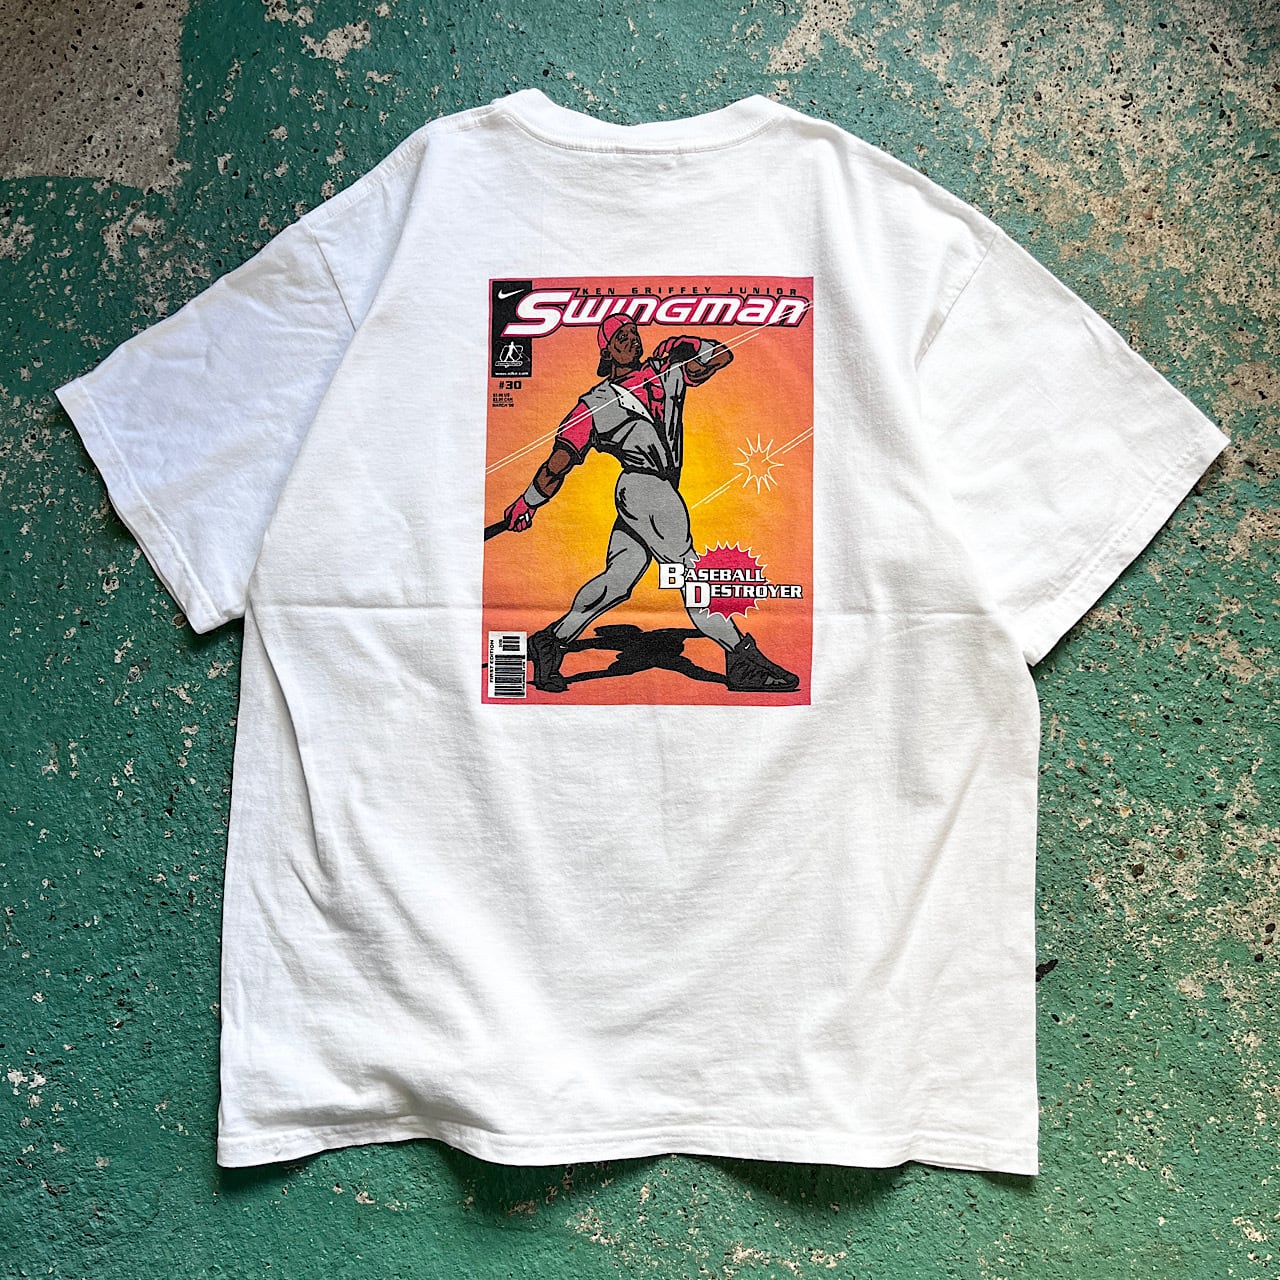 【デッド】 USA製 90s NIKE メジャーリーグ Tシャツ supreme